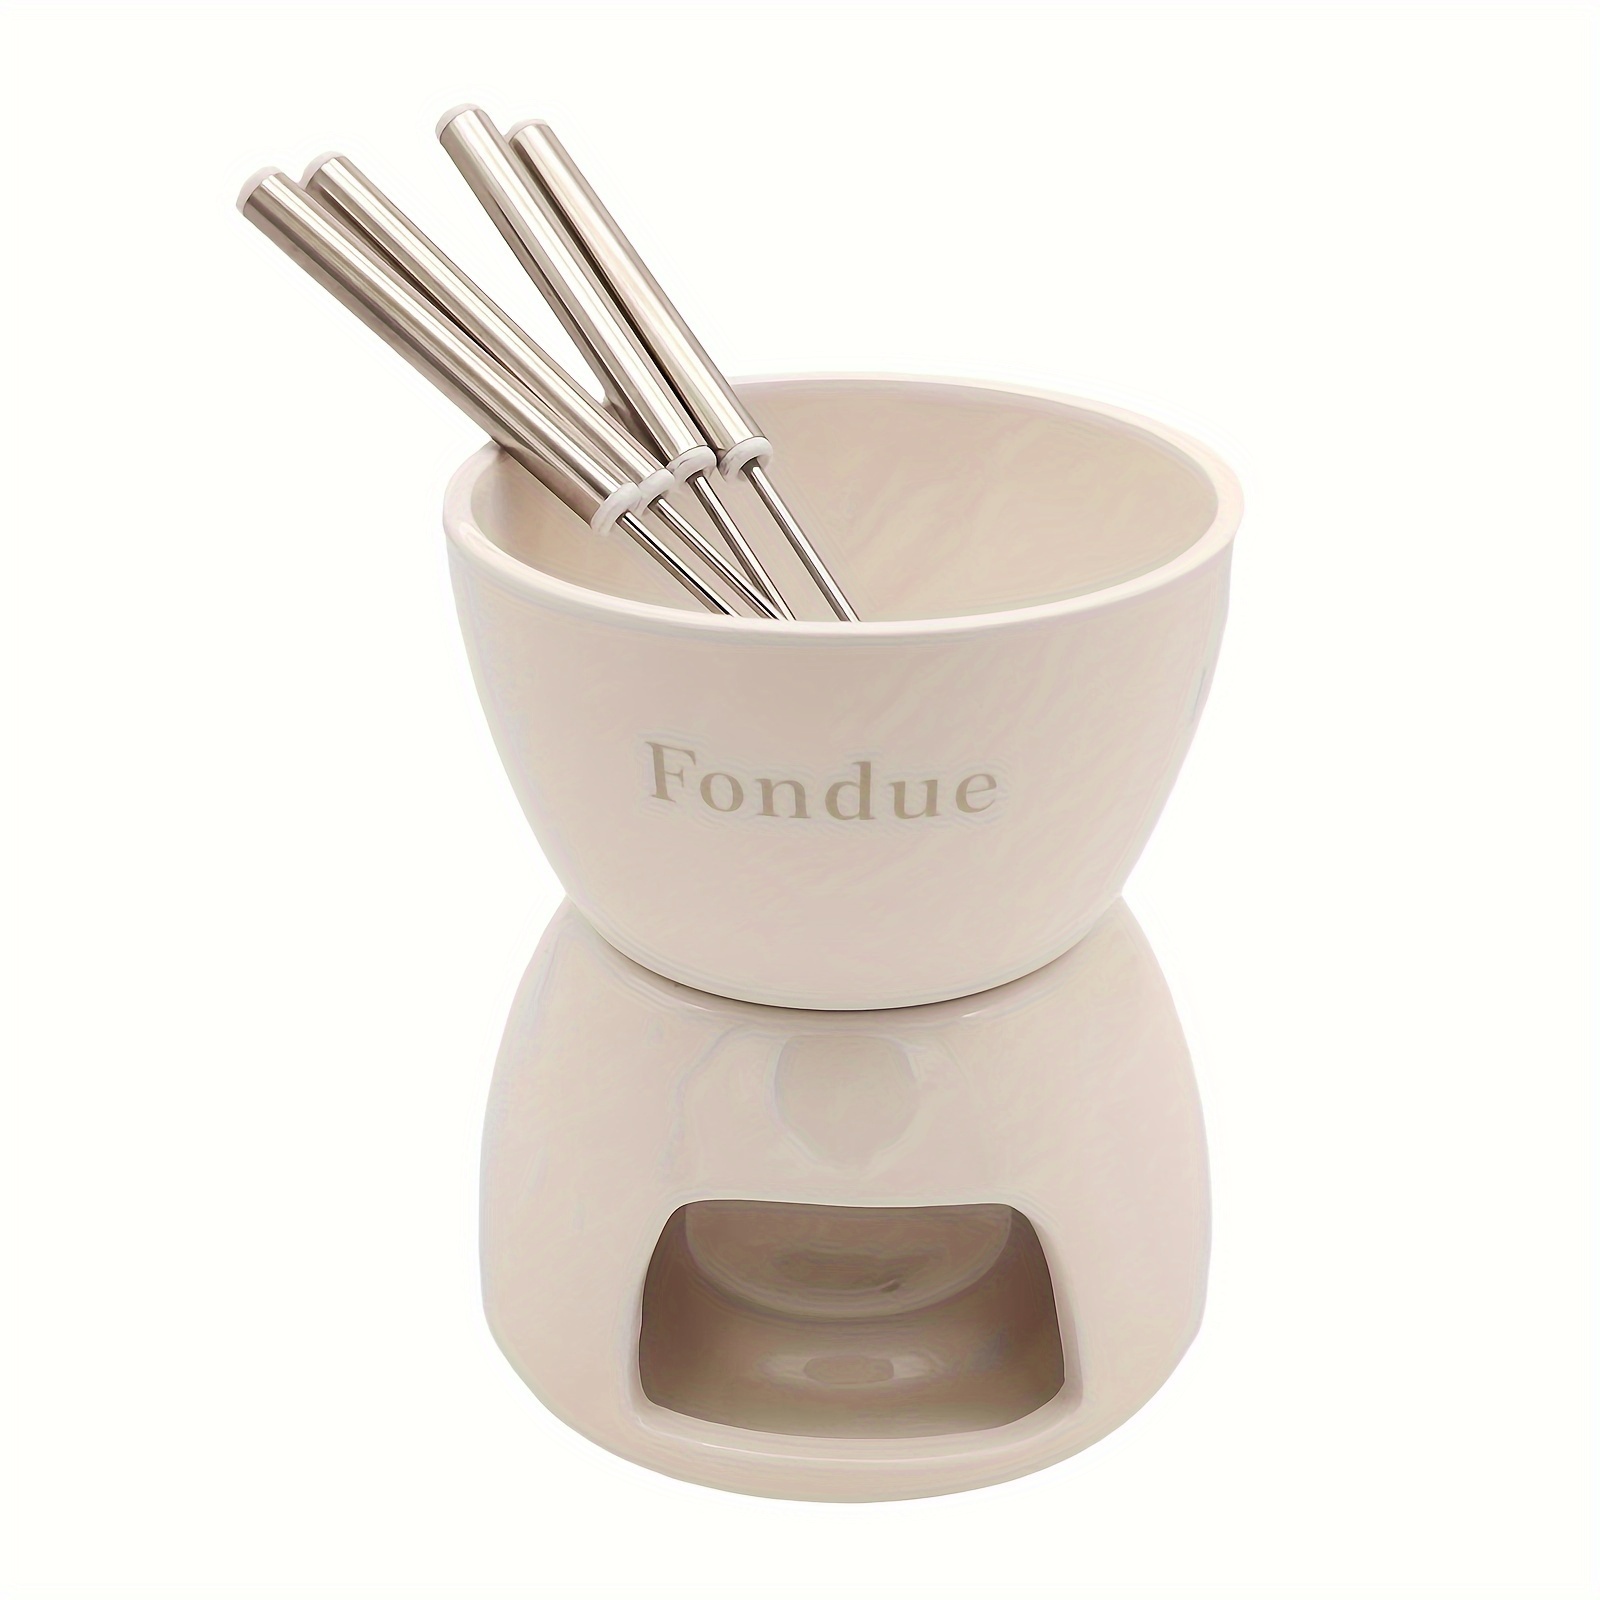 Fondue Burner - How to Light It -  Fondue kit